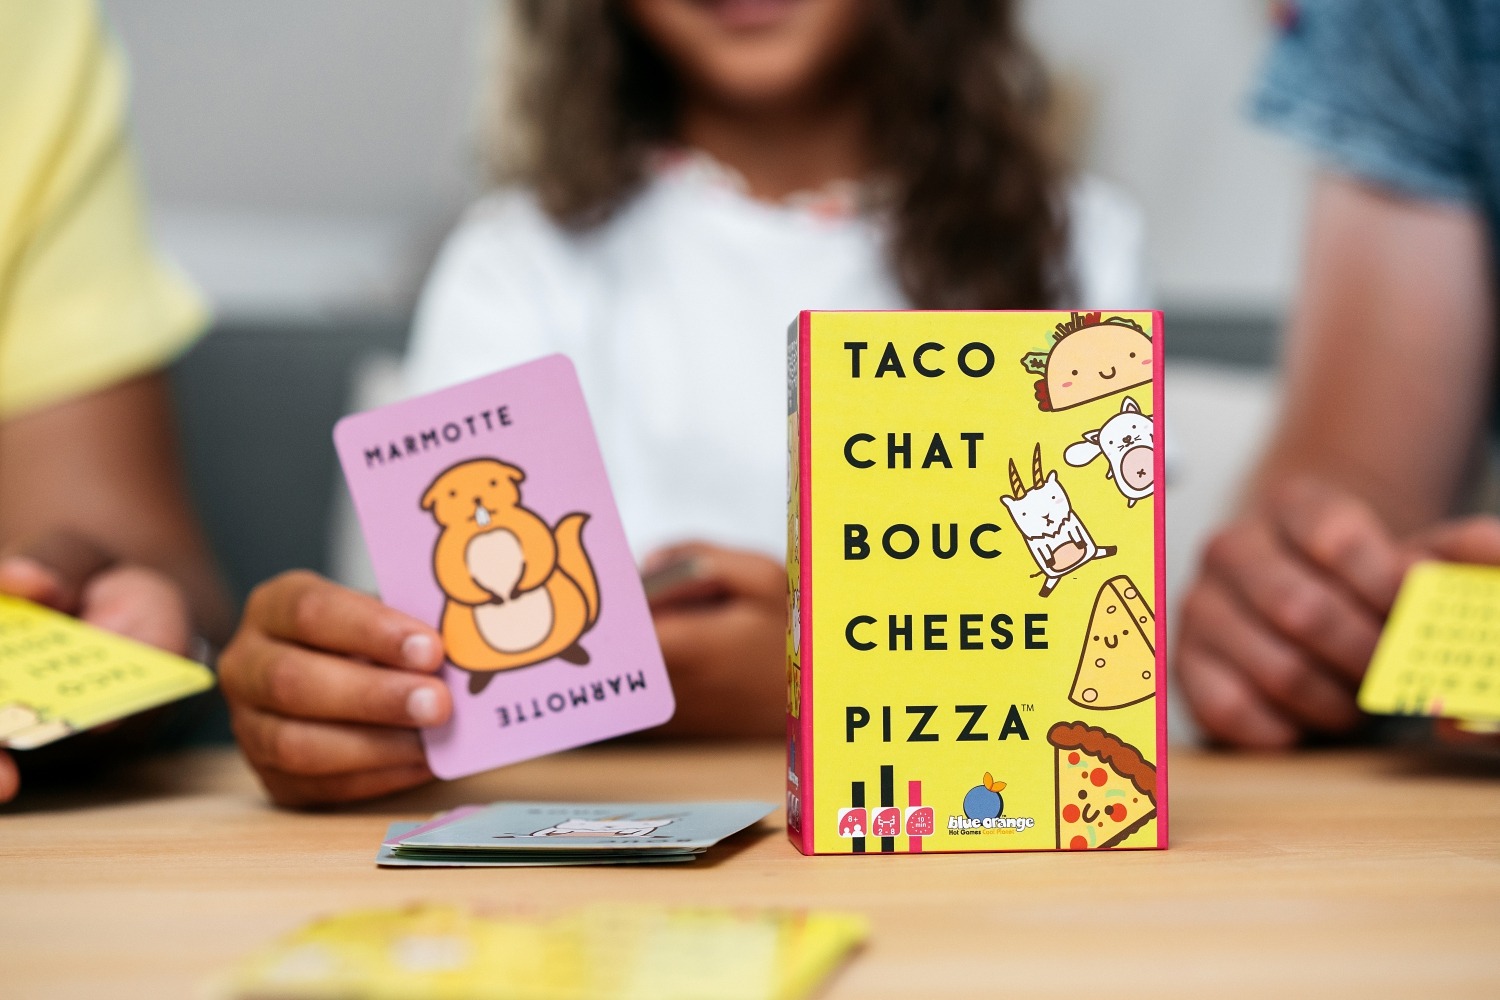 Taco chat bouc cheese pizza blue orange jeu de société boardgame tribuo